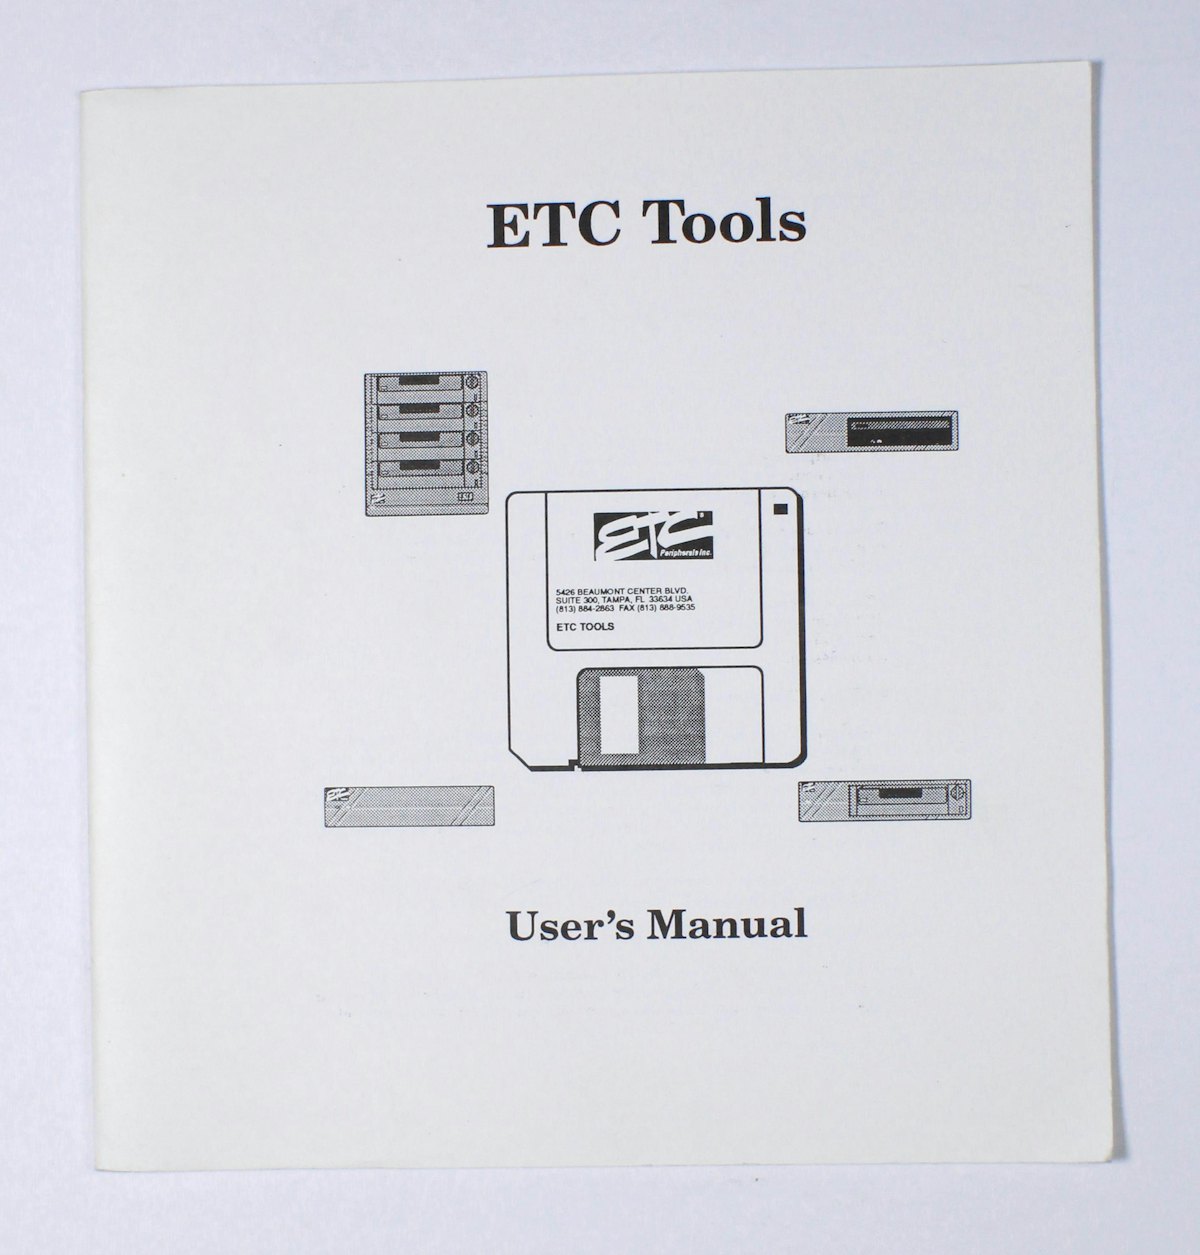 ETC Tools User's Manual